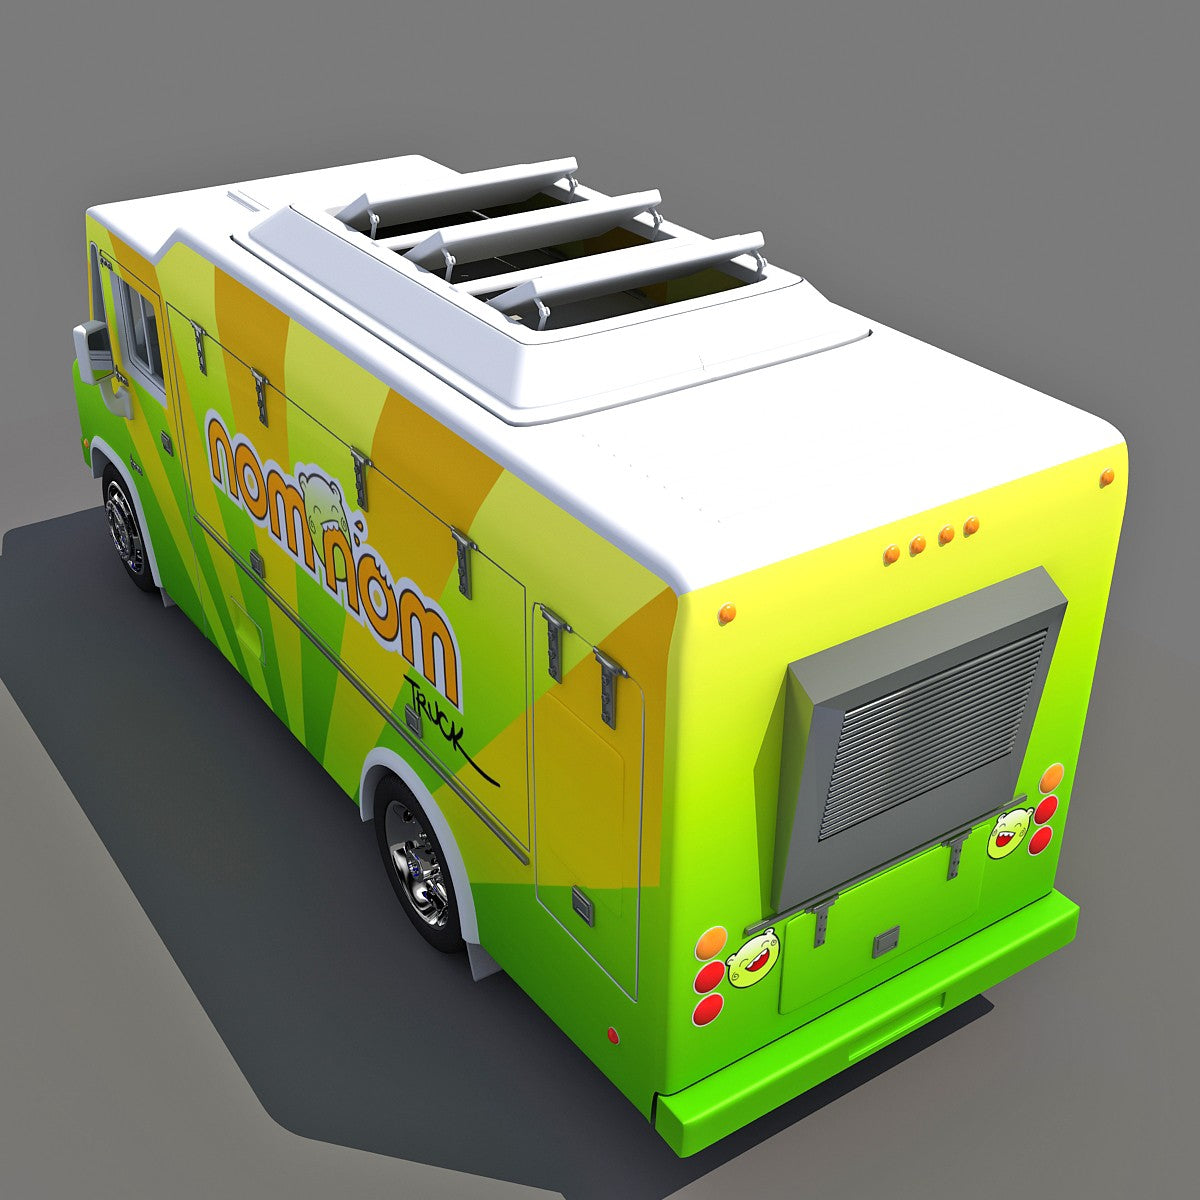 Nom Nom Food  Truck  3D  Model 3D  Horse